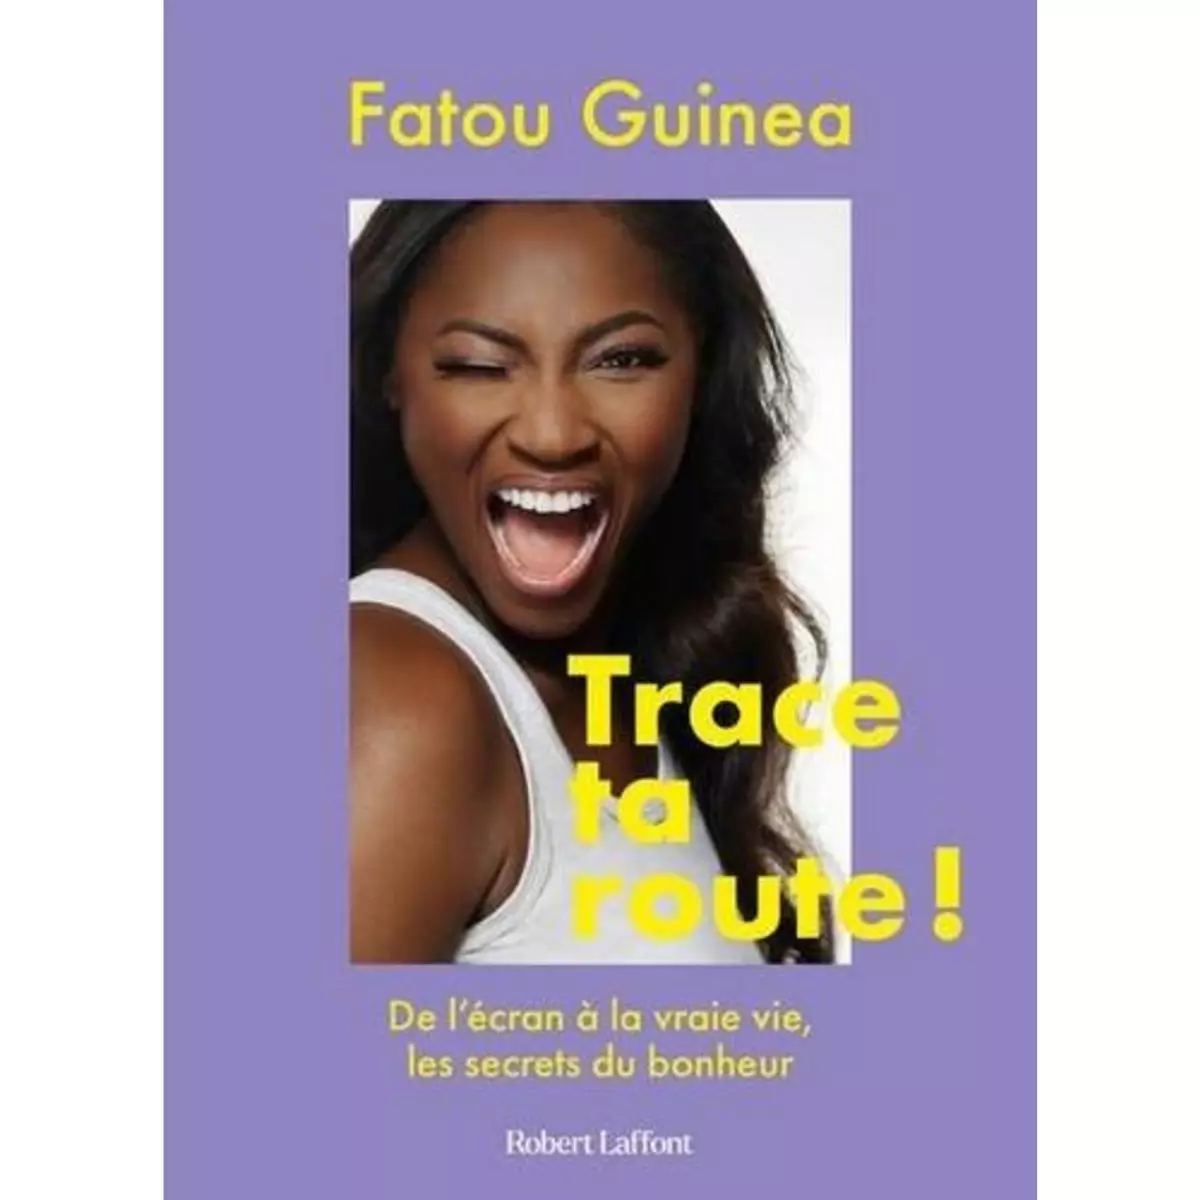  TRACE TA ROUTE ! DE L'ECRAN A LA VRAIE VIE, LES SECRETS DU BONHEUR, Guinea Fatou